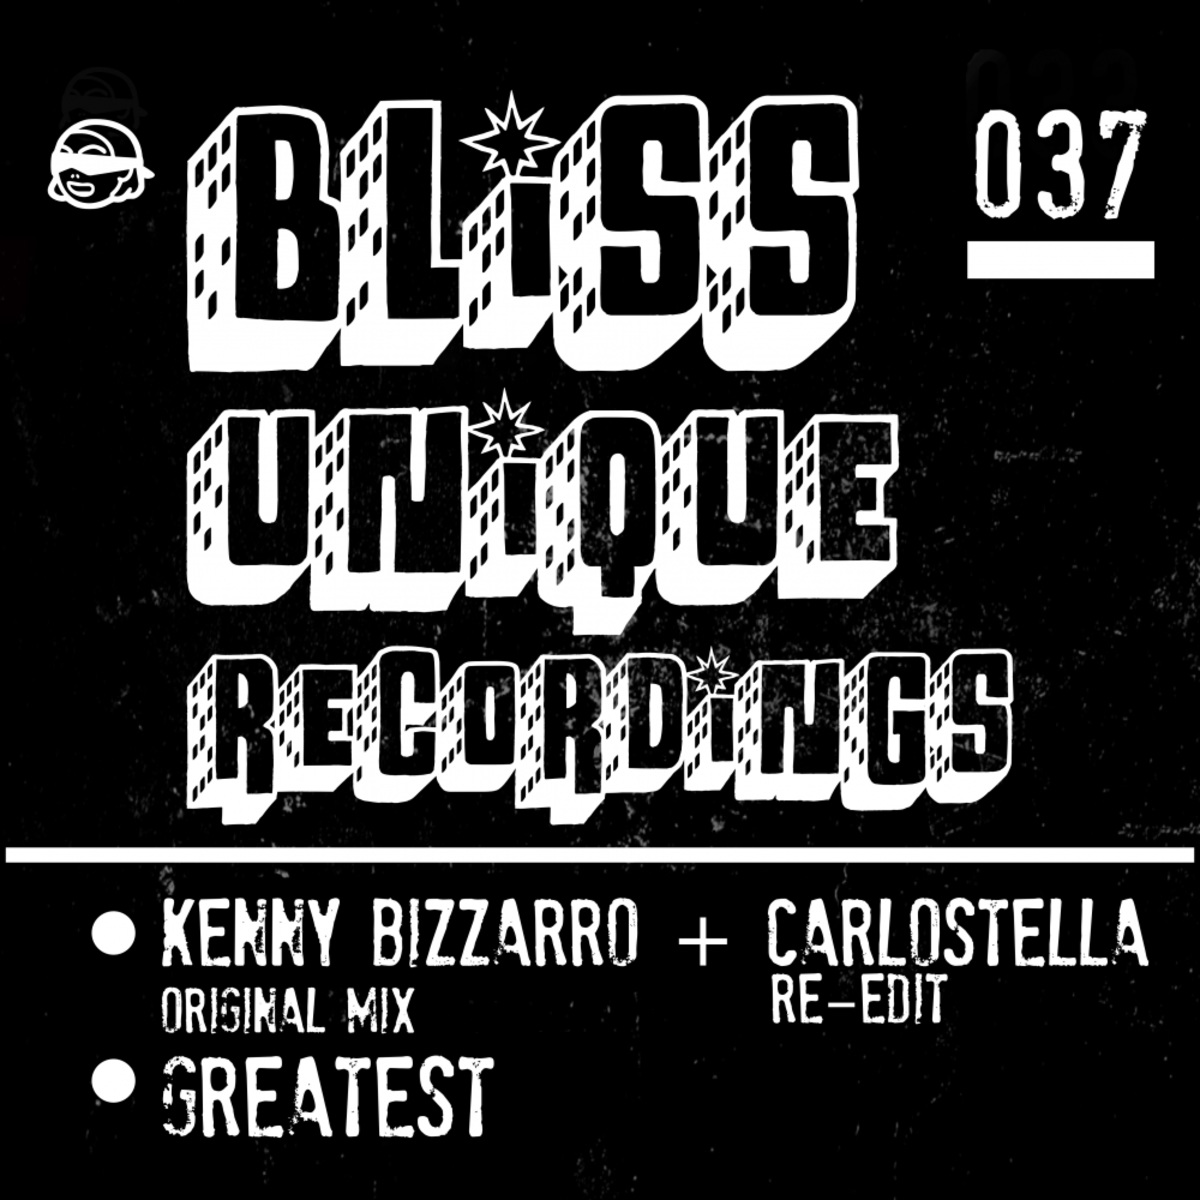 Kenny Bizzarro - Greatest / Bliss Unique Recordings